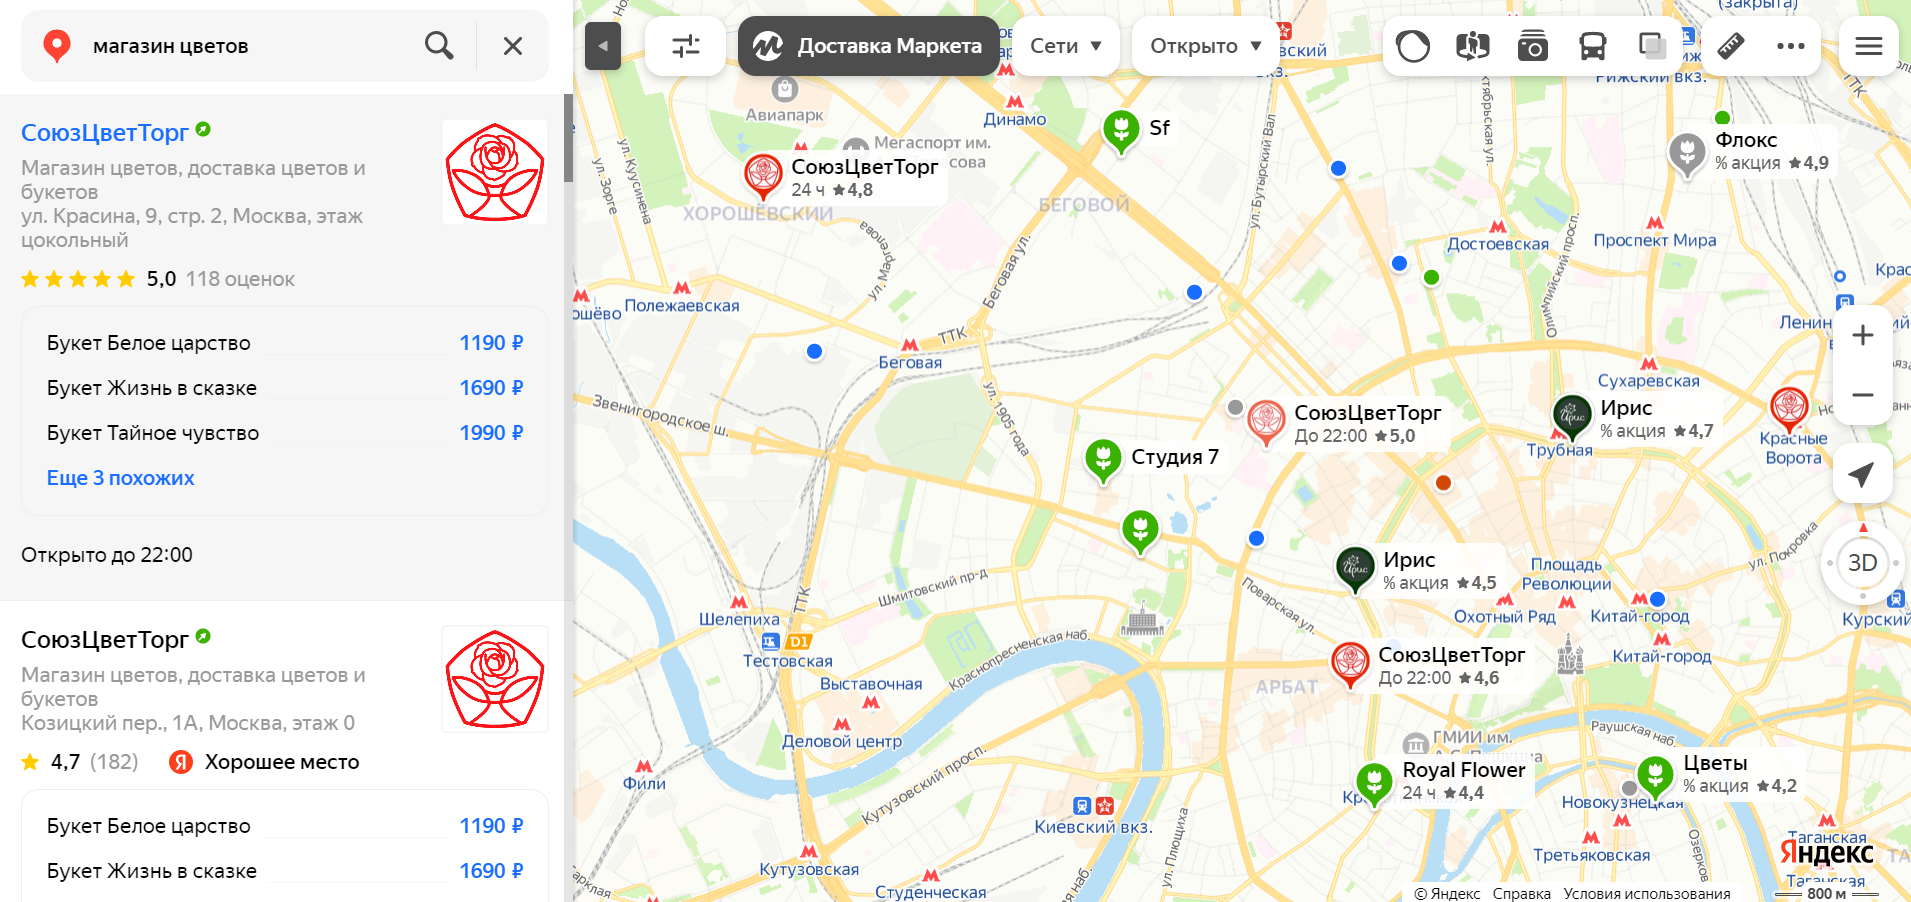 Новая опция на Картах Яндекса